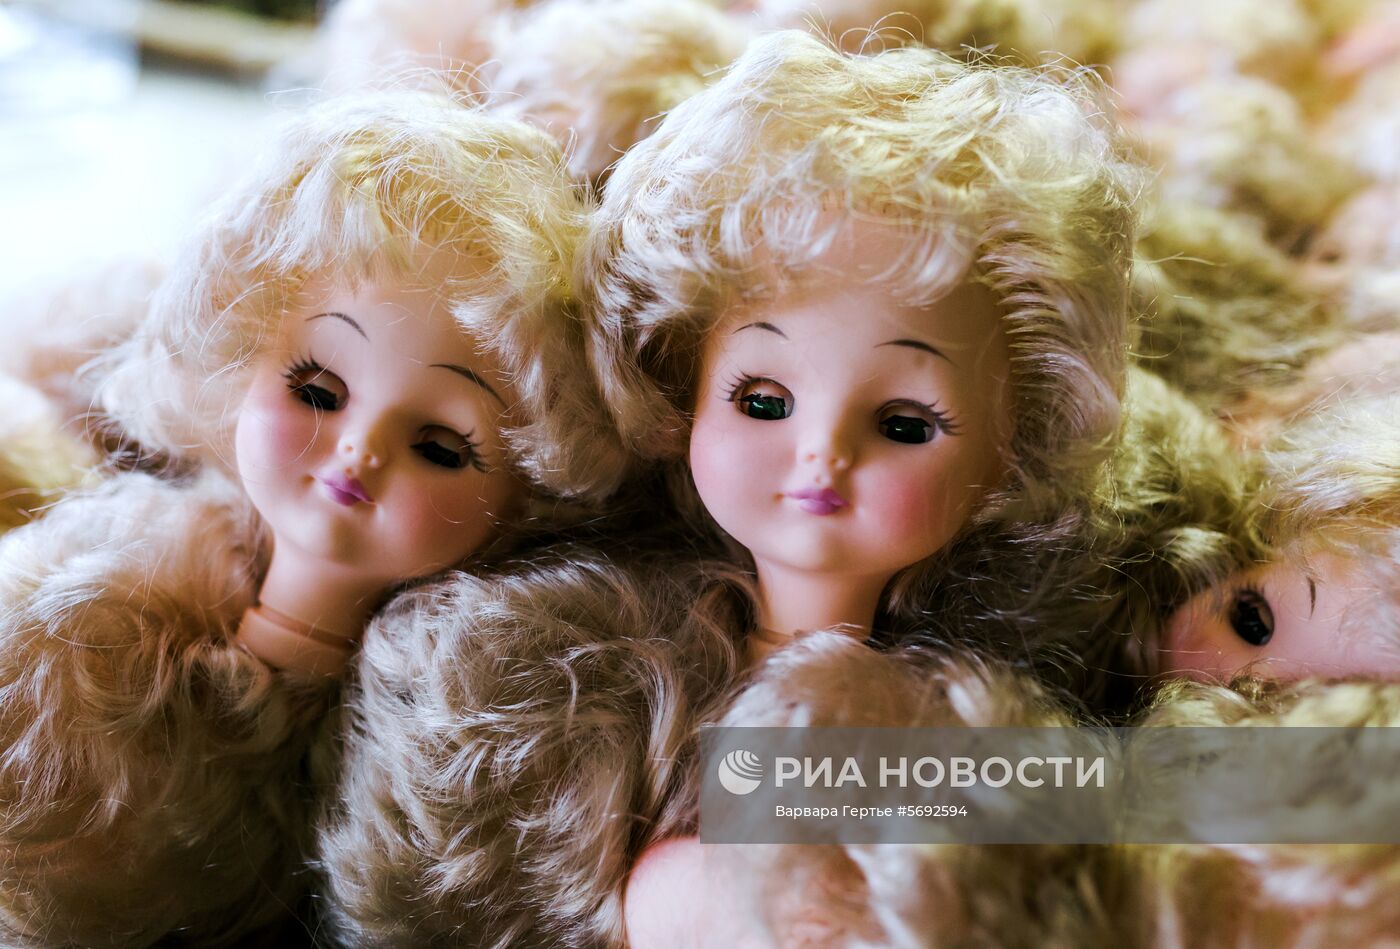 Фабрика игрушек "Мир кукол" в Иванове